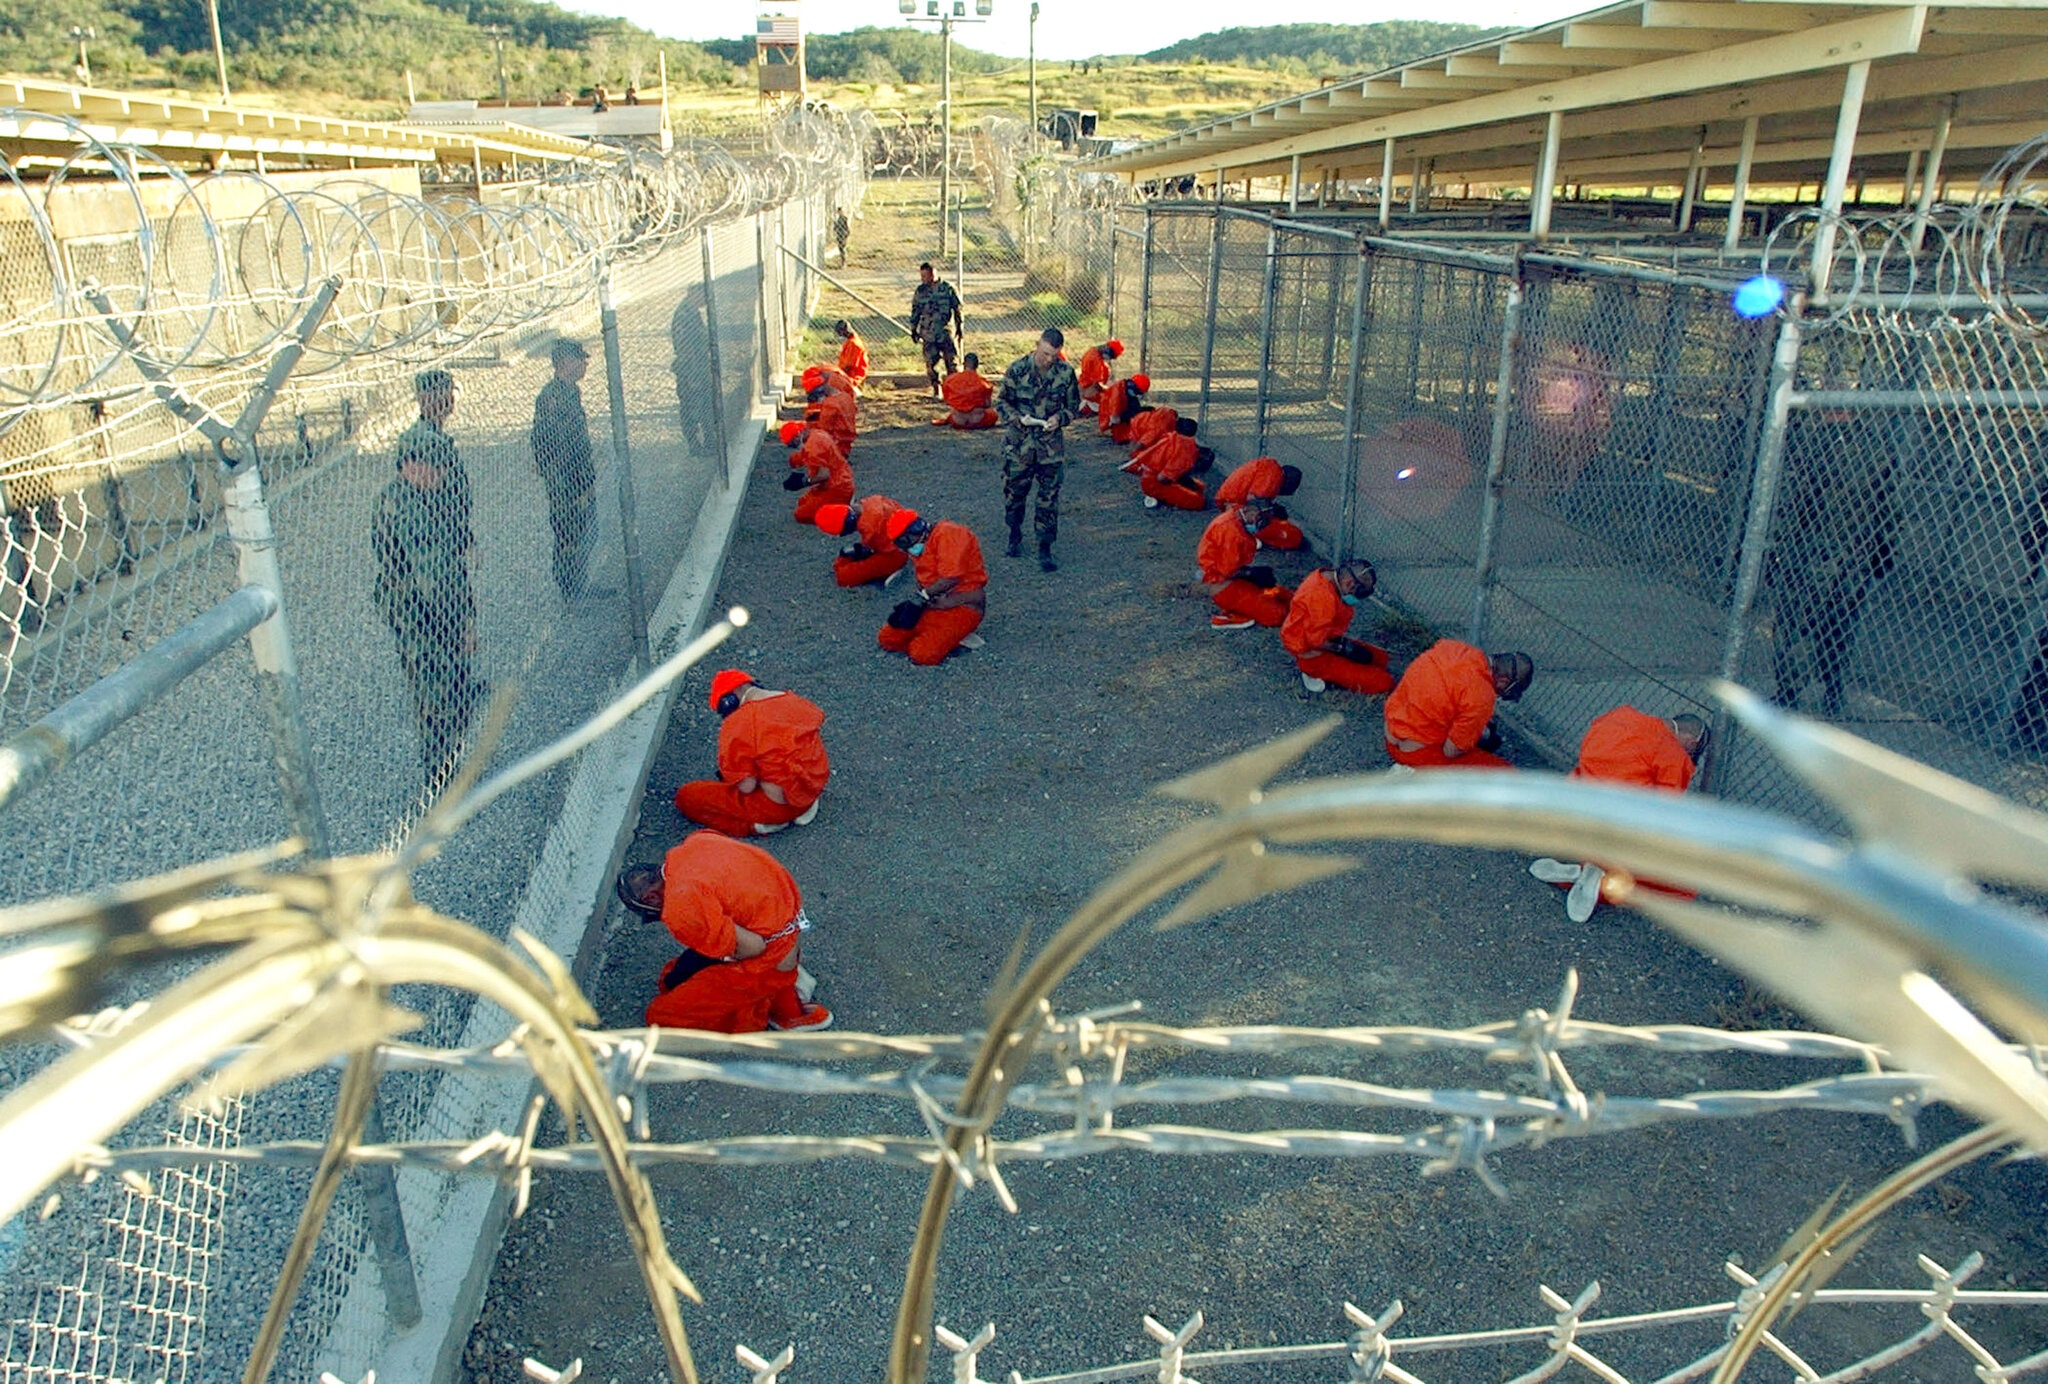 Una imagen difundida por el ejército muestra la llegada de los primeros detenidos acusados de formar parte de al Qaeda y los talibanes en la Bahía de Guantánamo en 2002.